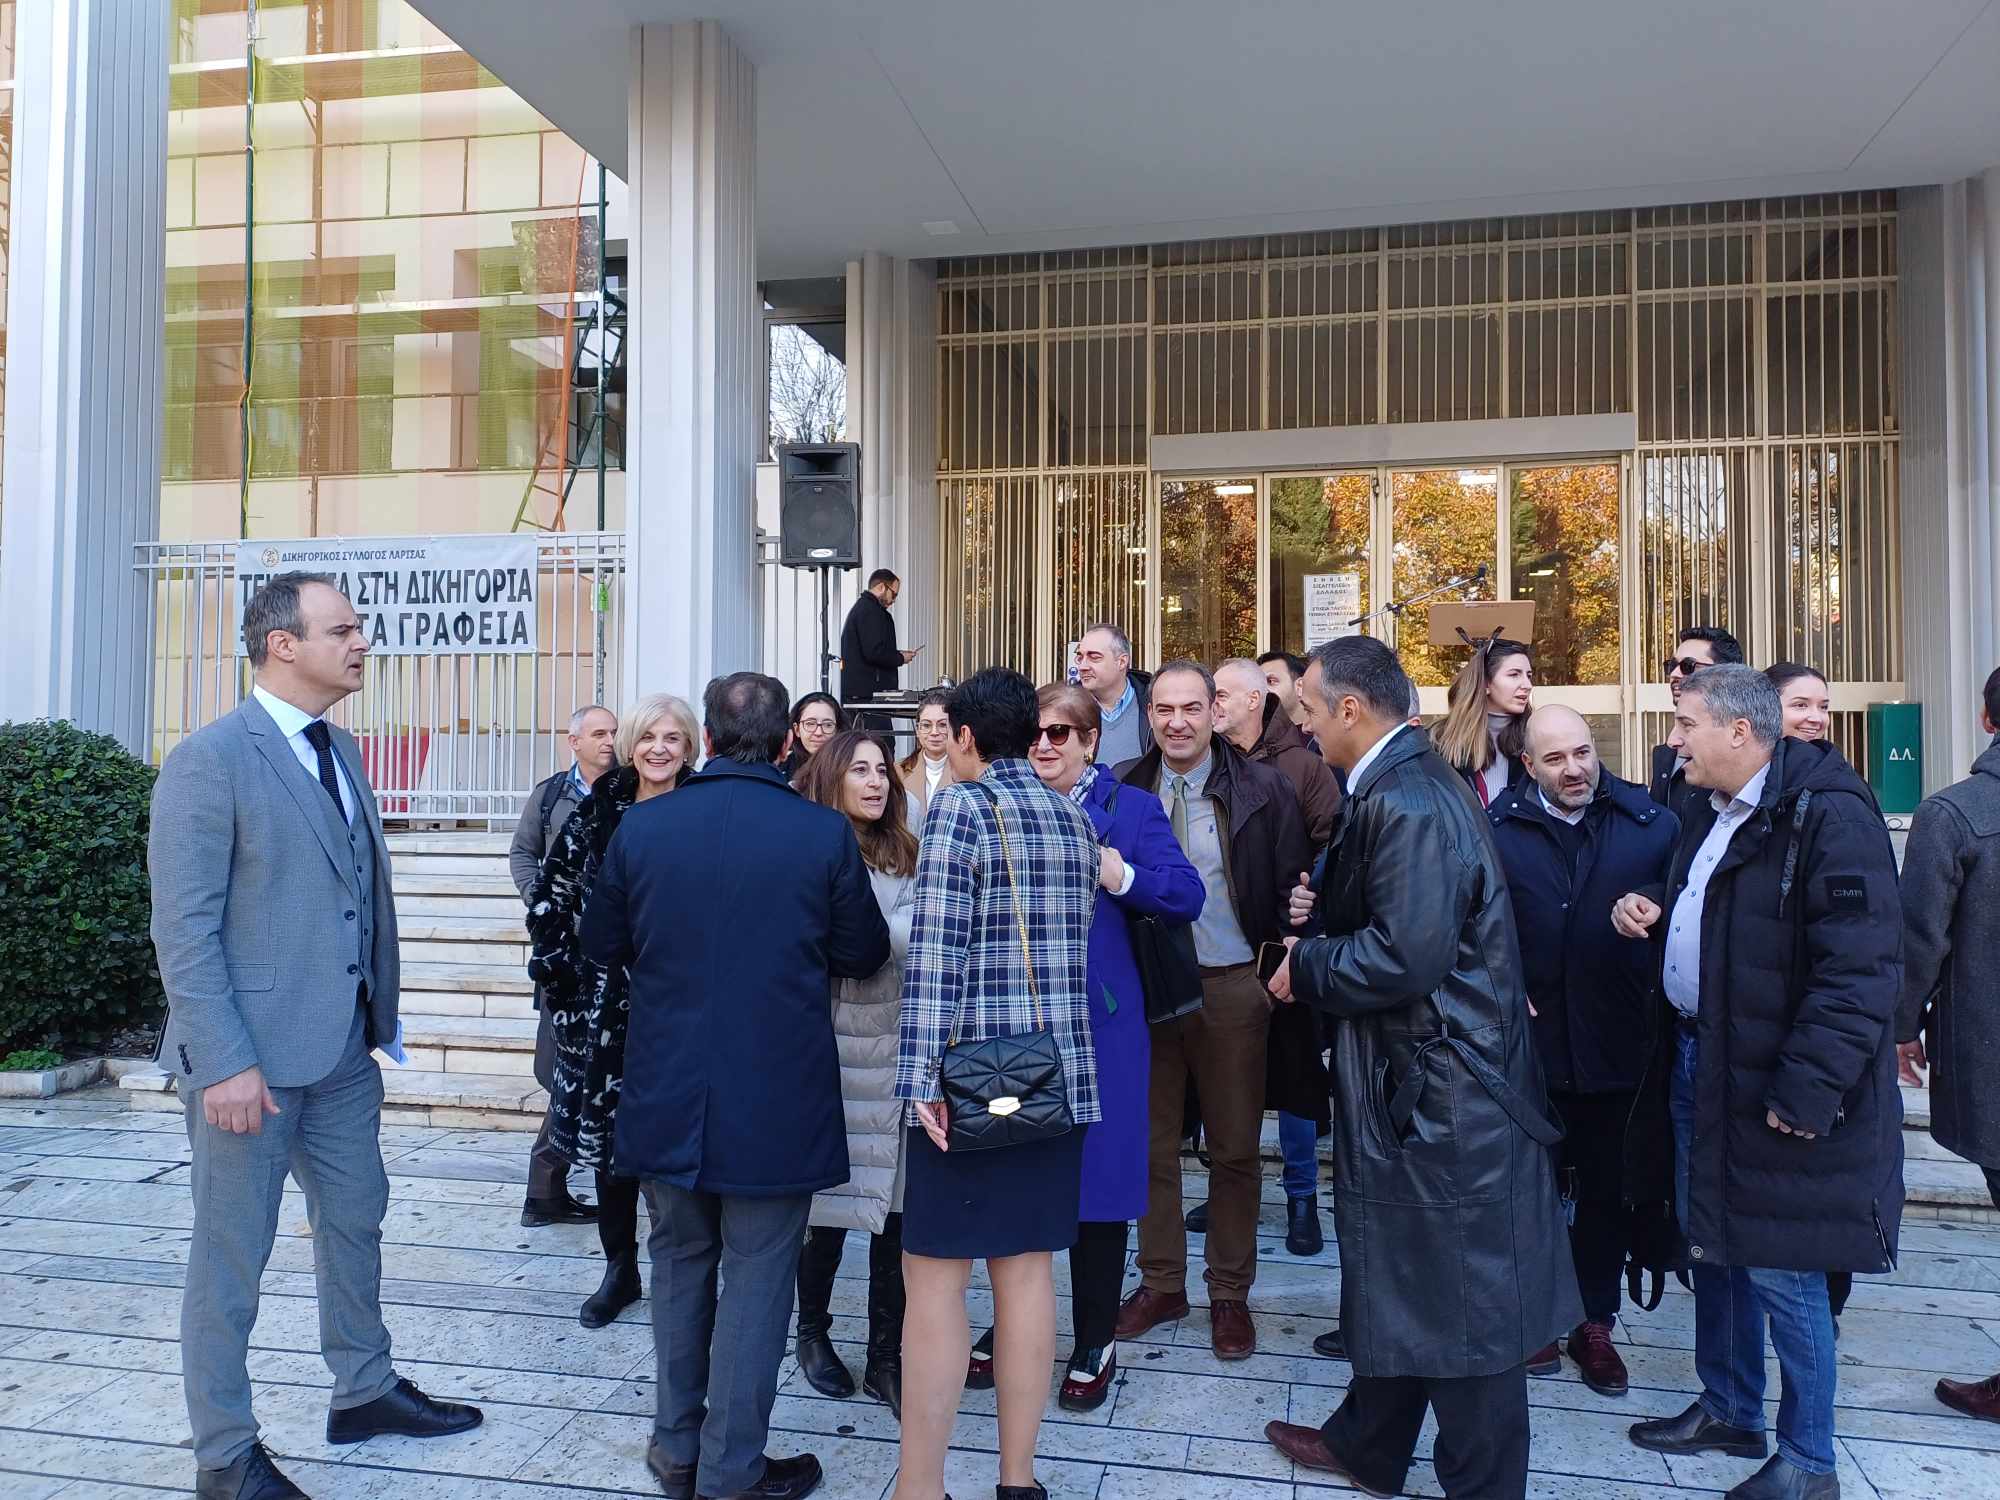 Συμβολική συγκέντρωση διααρτυρίας των δικηγόρων έξω από το δικαστικό μέγαρο Λάρισας για το φορολογικό νομοσχέδιο (ΦΩΤΟ)